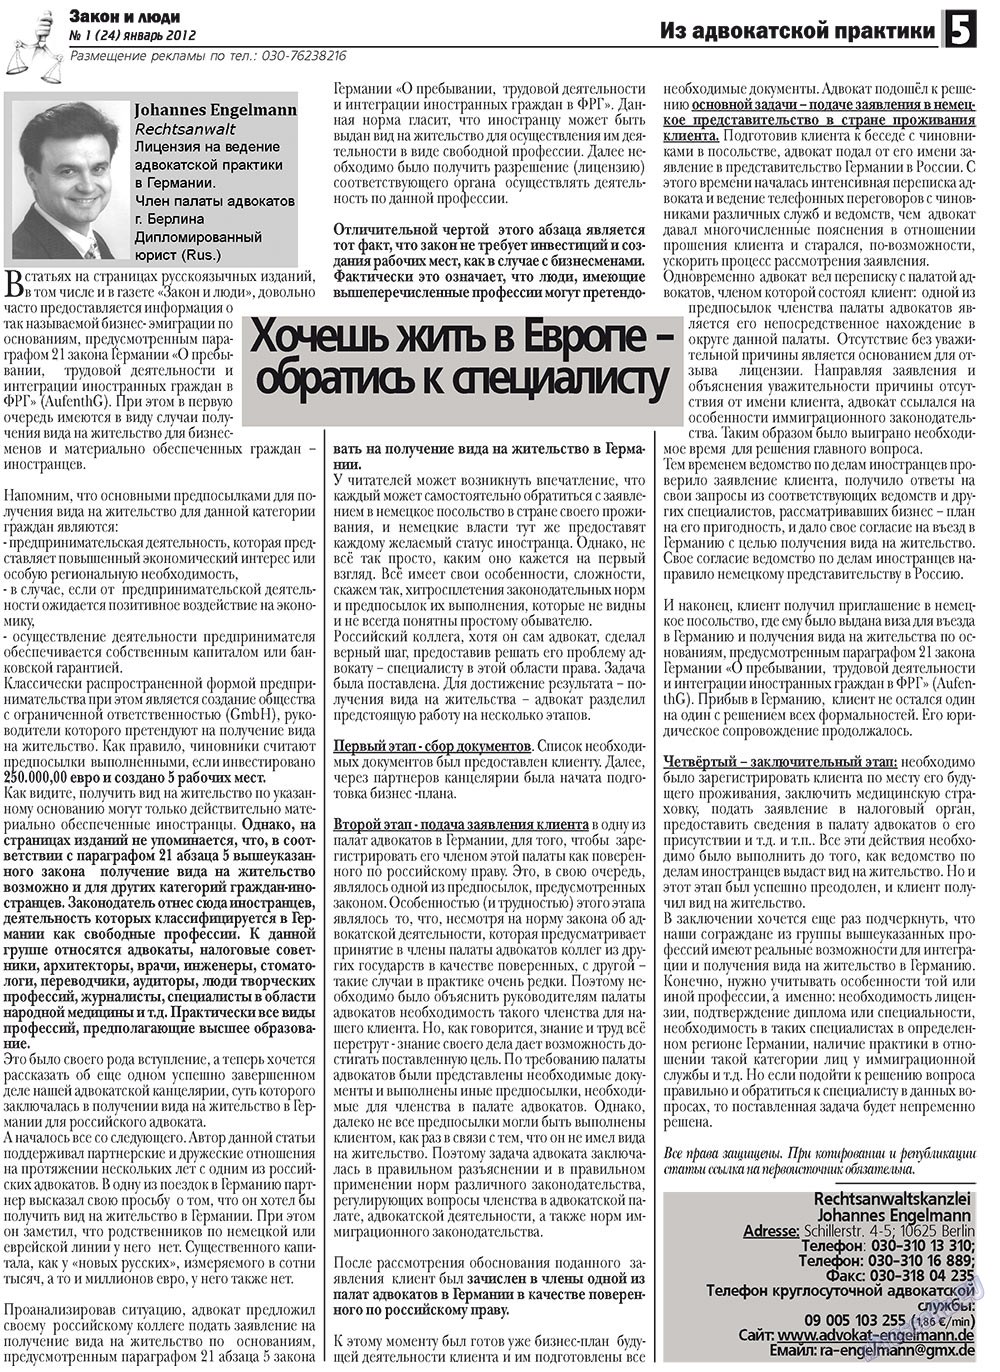 Закон и люди, газета. 2012 №1 стр.5